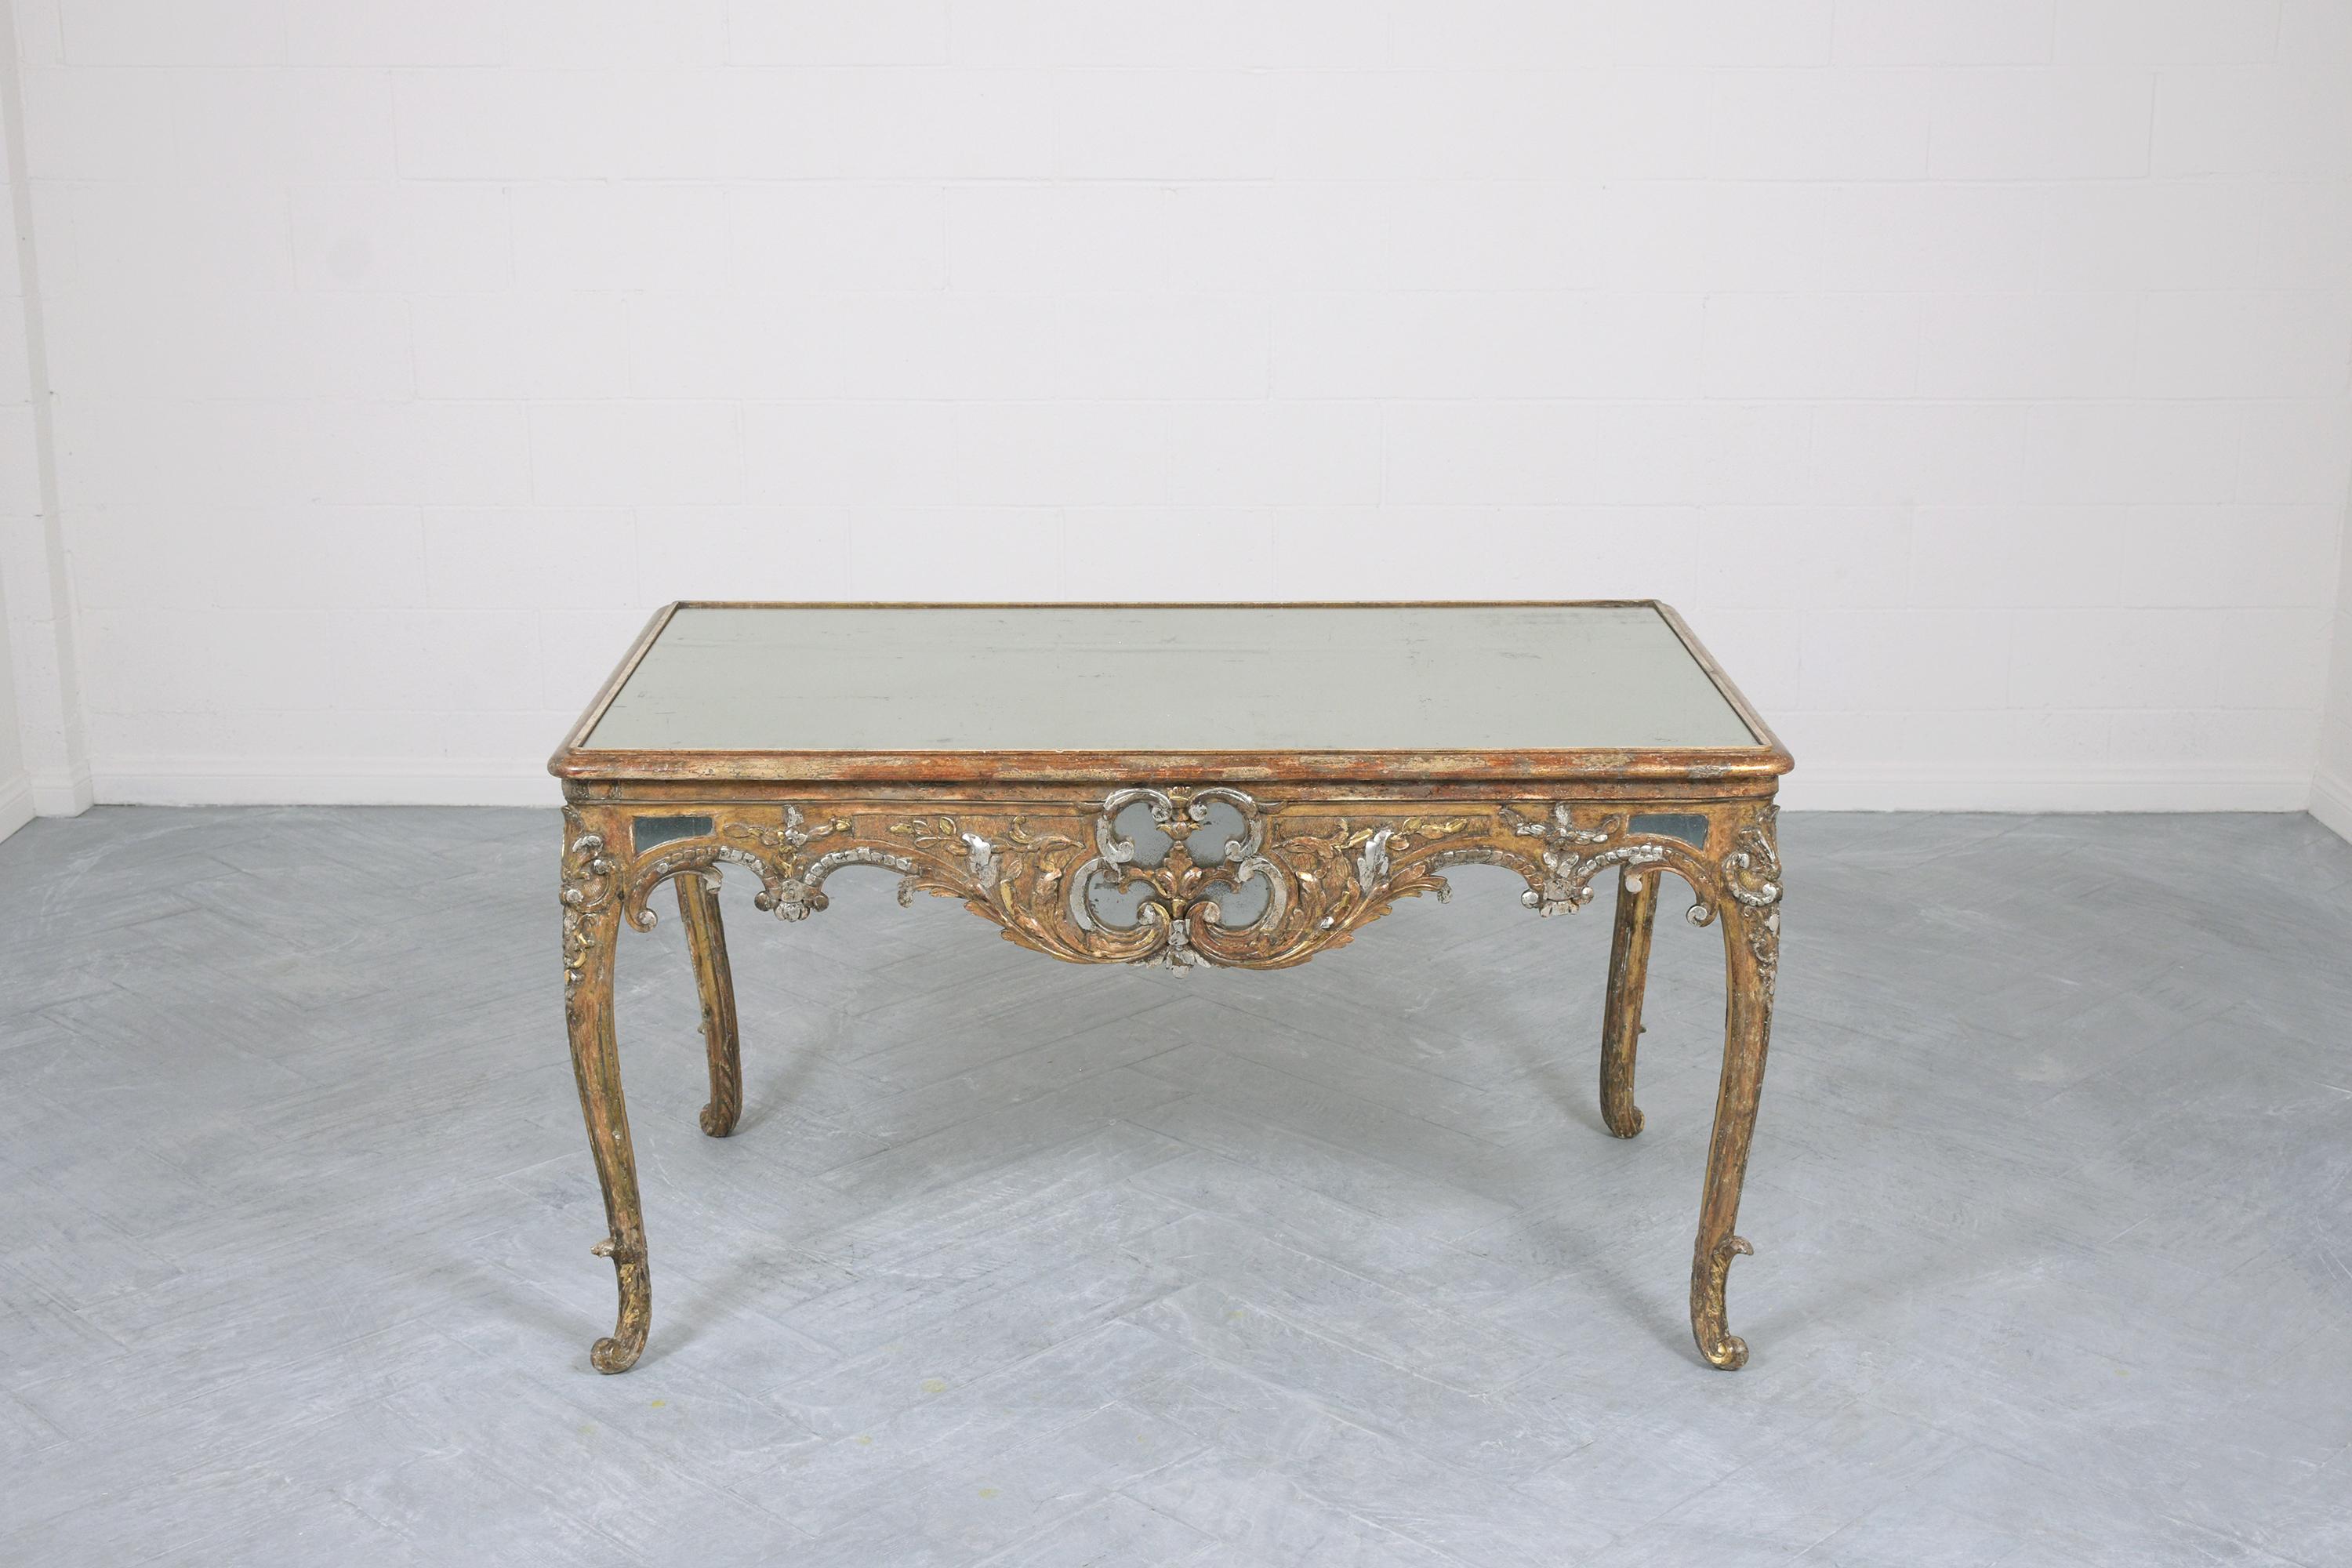 Plongez dans la grandeur du passé avec notre table centrale Louis XVI du XIXe siècle, un exemple époustouflant d'artisanat historique. Restaurée avec amour par notre équipe dévouée, cette table est une pièce époustouflante d'art et d'histoire.